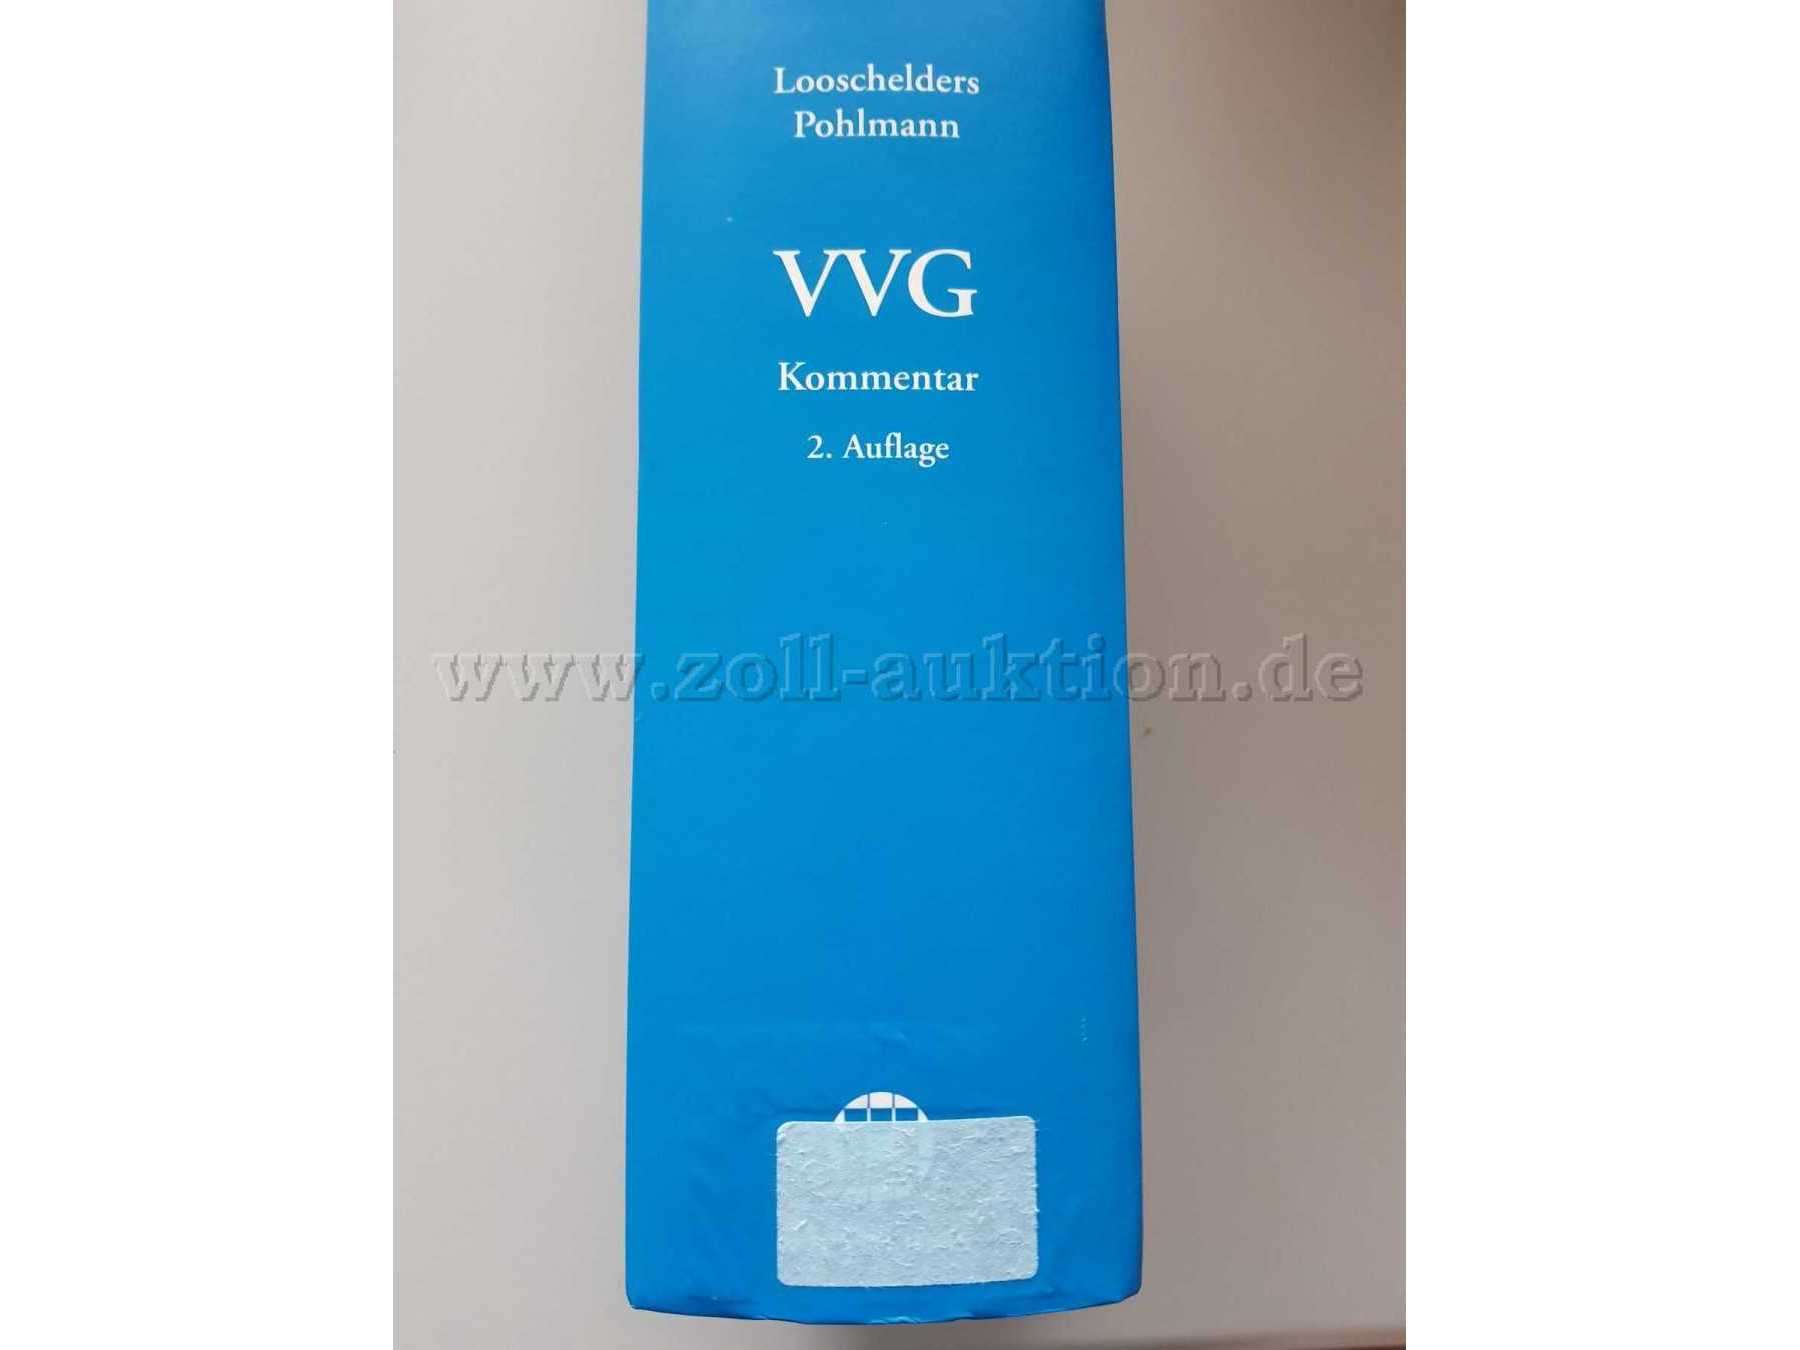 VVG-Kommentar (Looschelders/Pohlmann) - Klebereste auf dem Einband